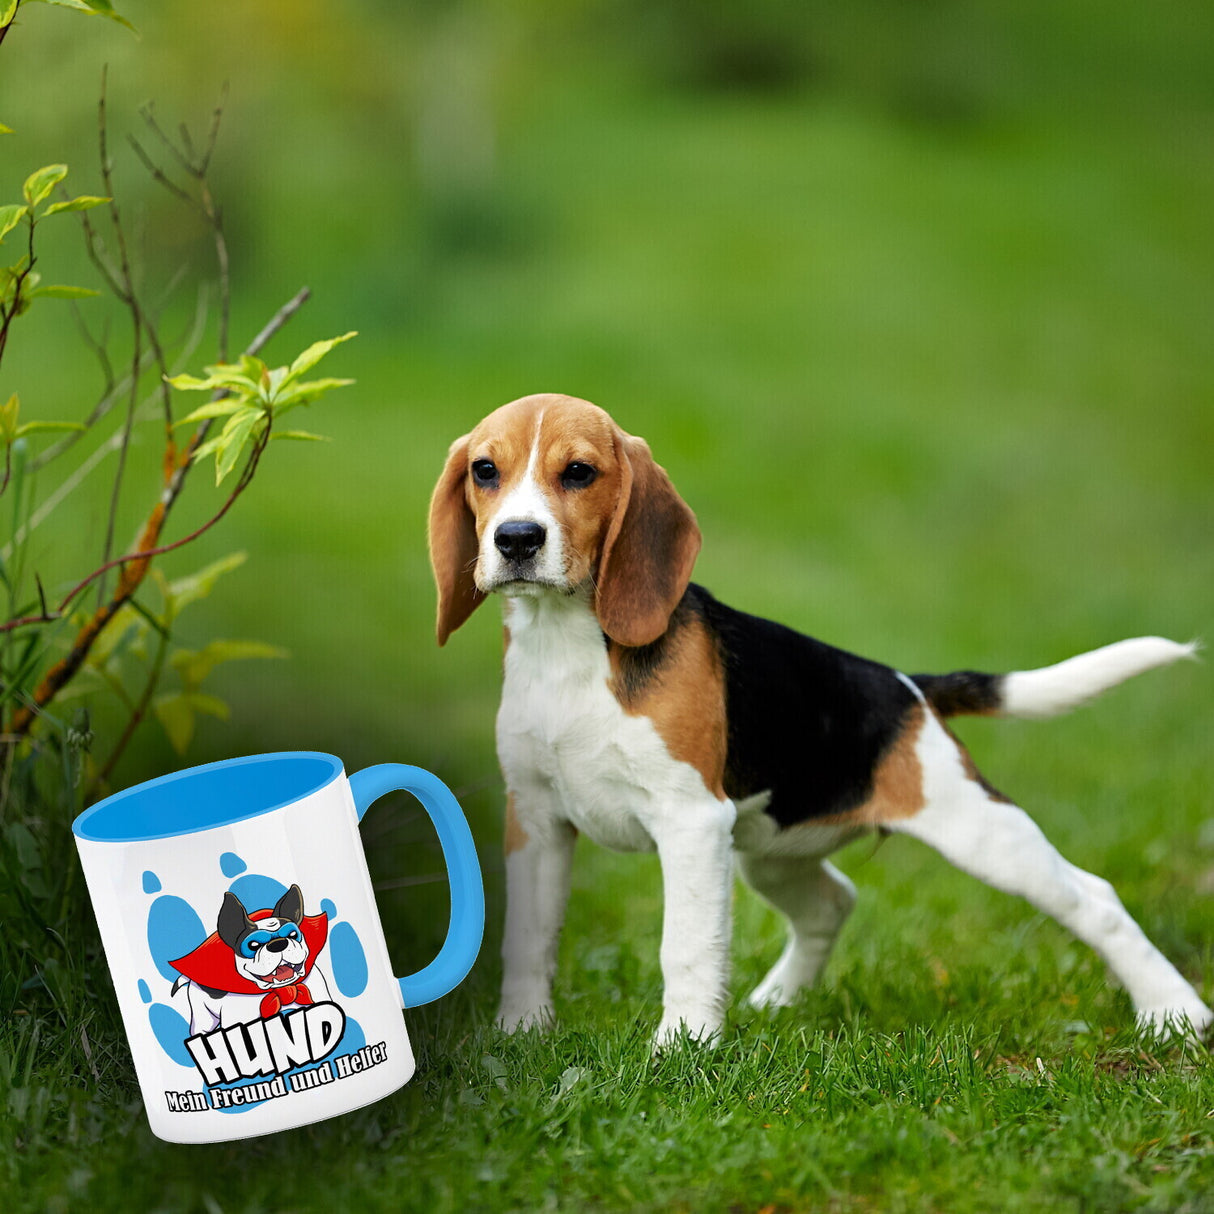 Kaffeebecher mit Superhelden - Dogge - Hund mein Freund und Helfer